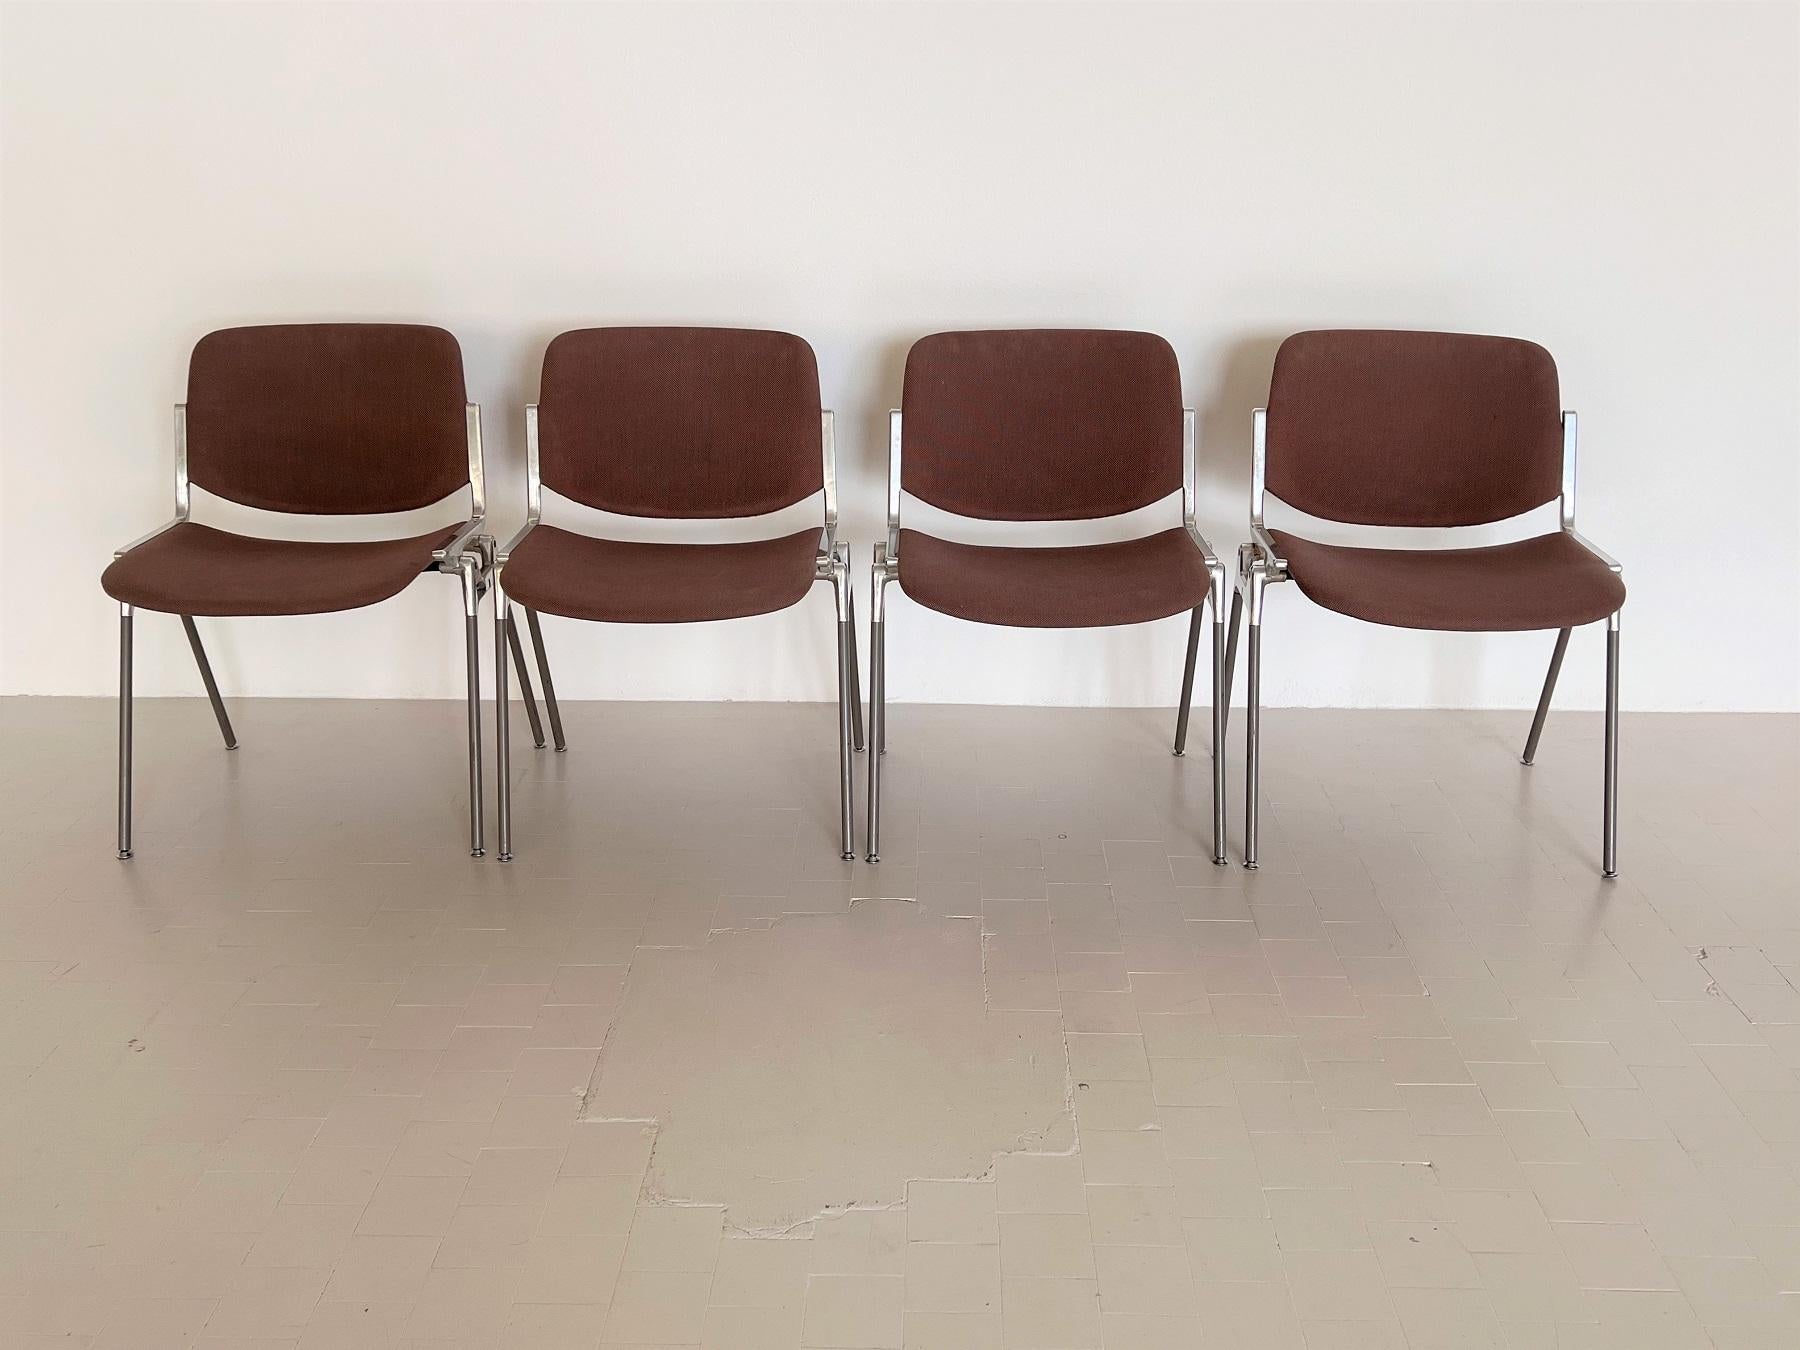 Un ensemble de quatre chaises Giancarlo Piretti DSC 106 en tapisserie marron d'origine.
La forme et la fonction se sont rejointes dans la conception de ces chaises empilables bien connues de Giancarlo Piretti pour Anonima Castelli. 
Elles sont